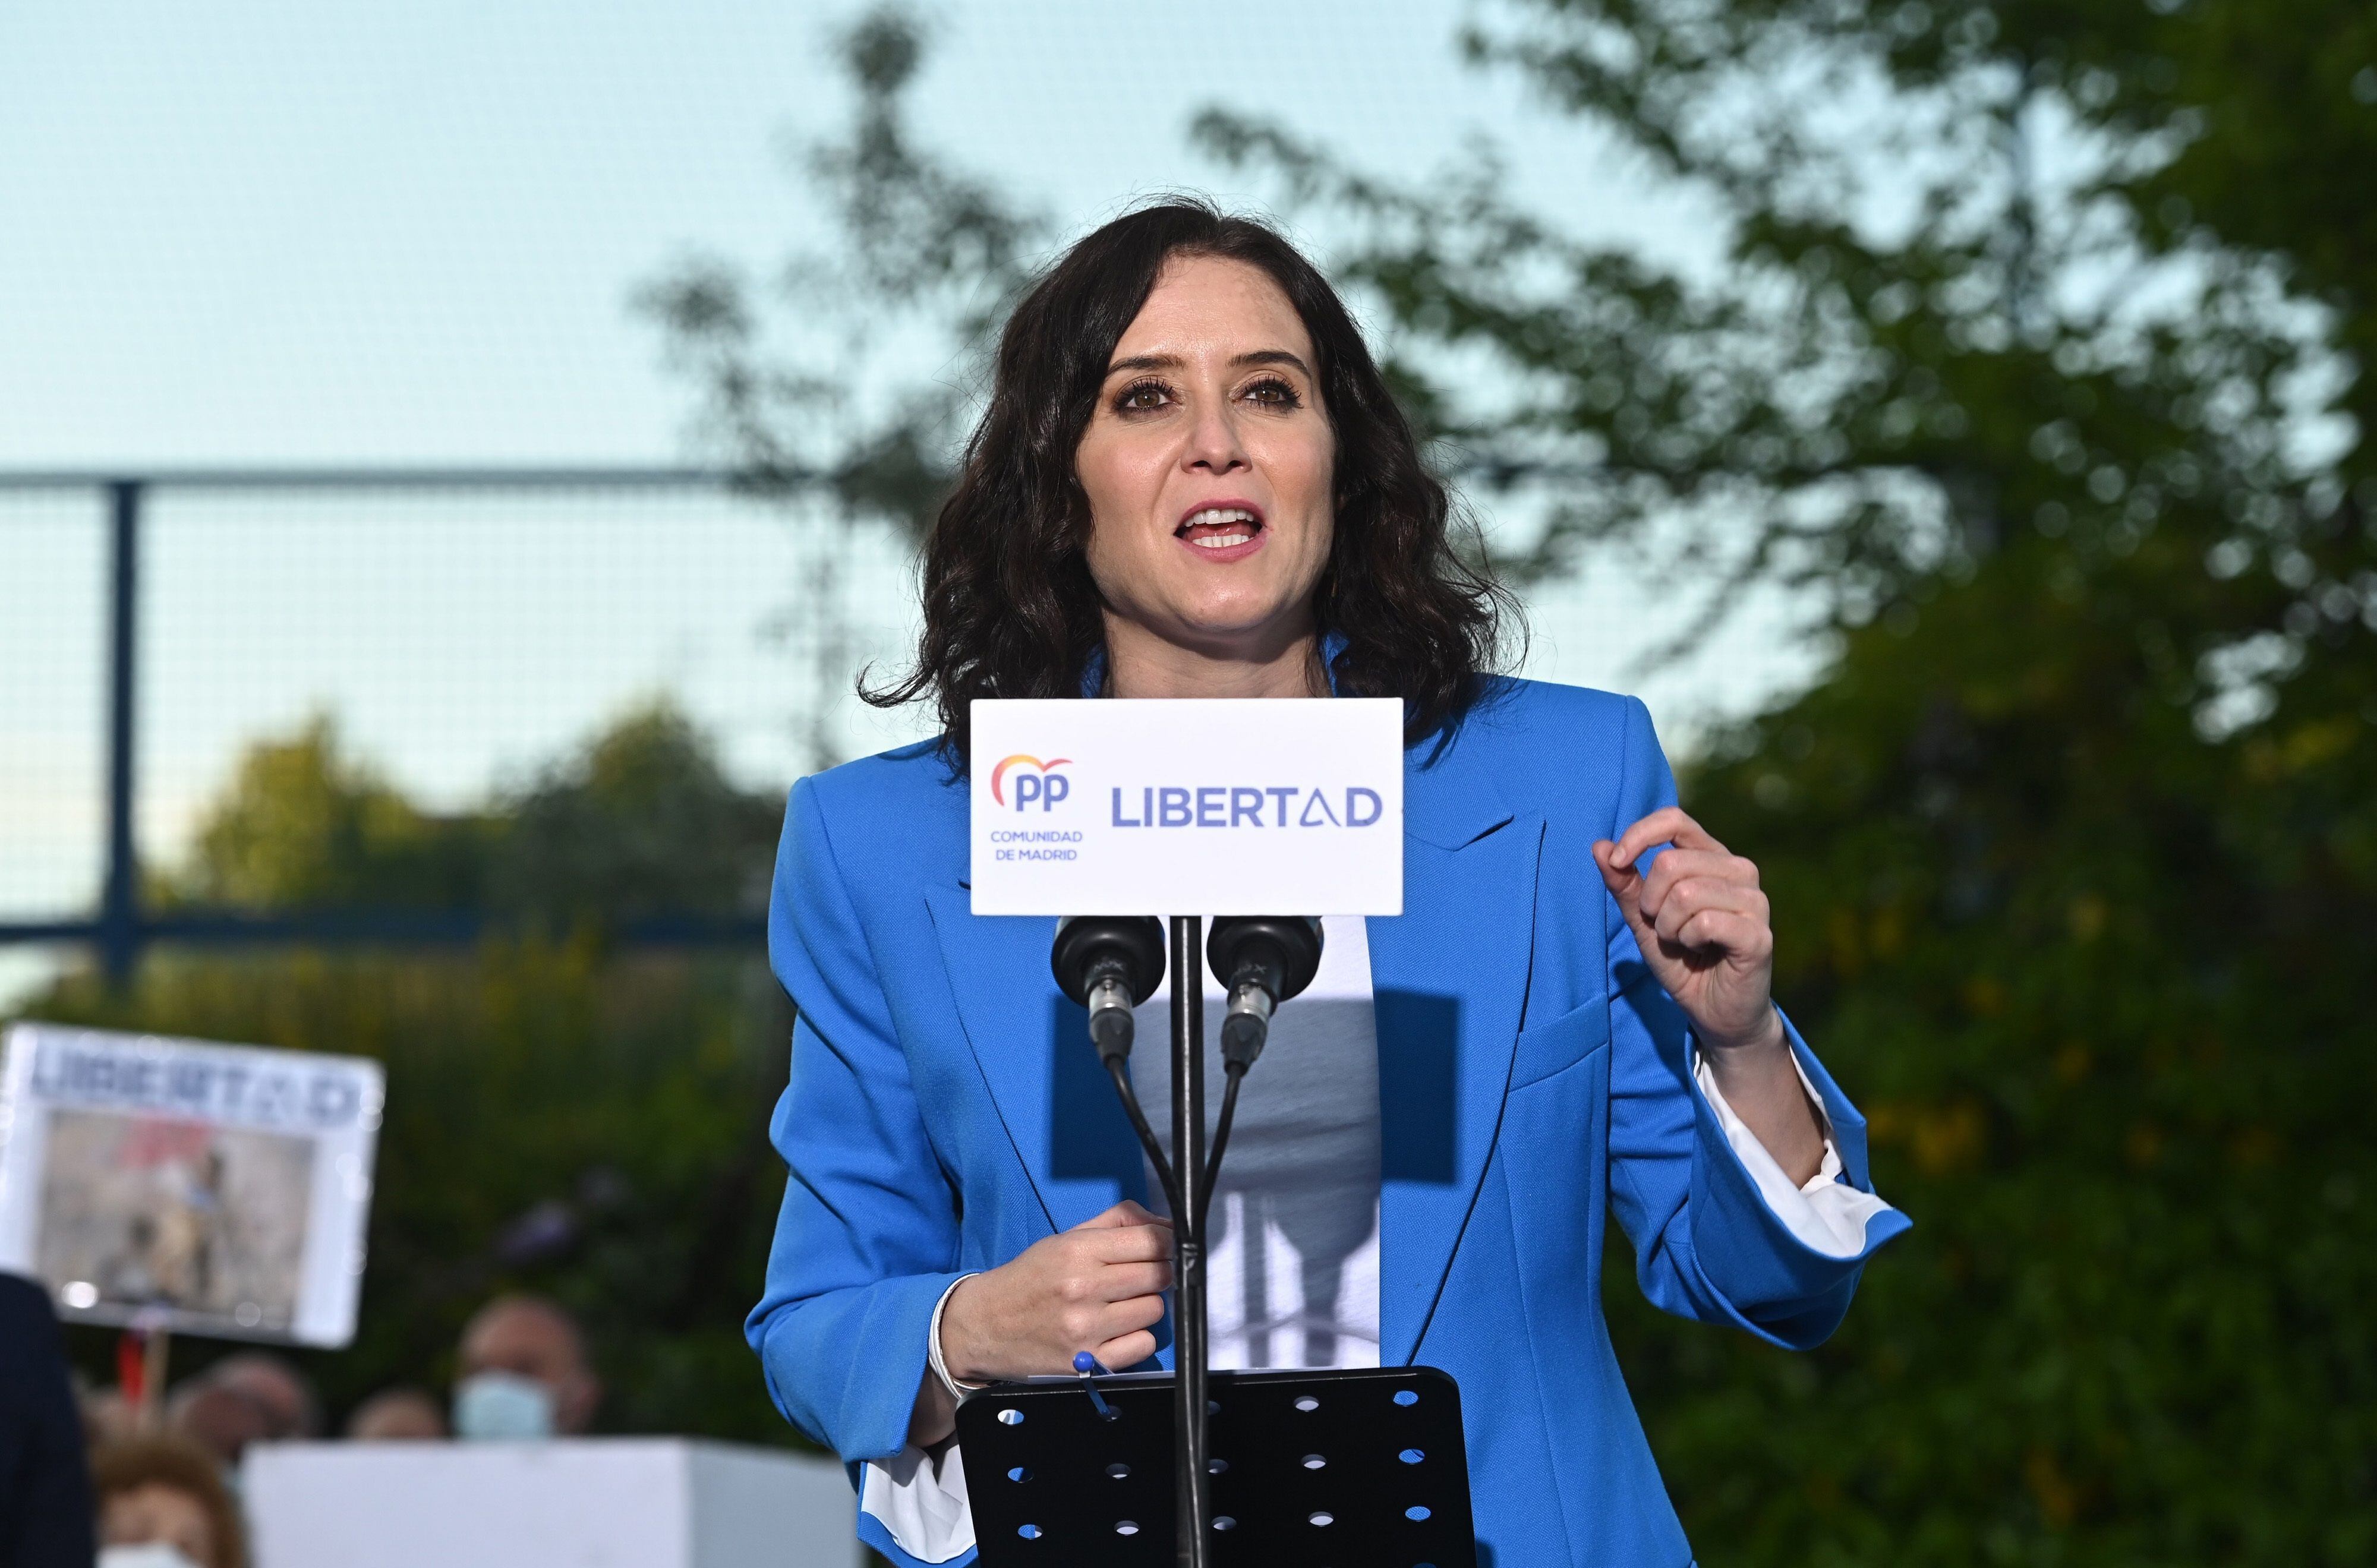 A candidata do Partido Popular à presidência da Comunidade de Madri, Isabel Díaz Ayuso, durante o ato de campanha em 29 de abril na localidade de Pinto (Madri).